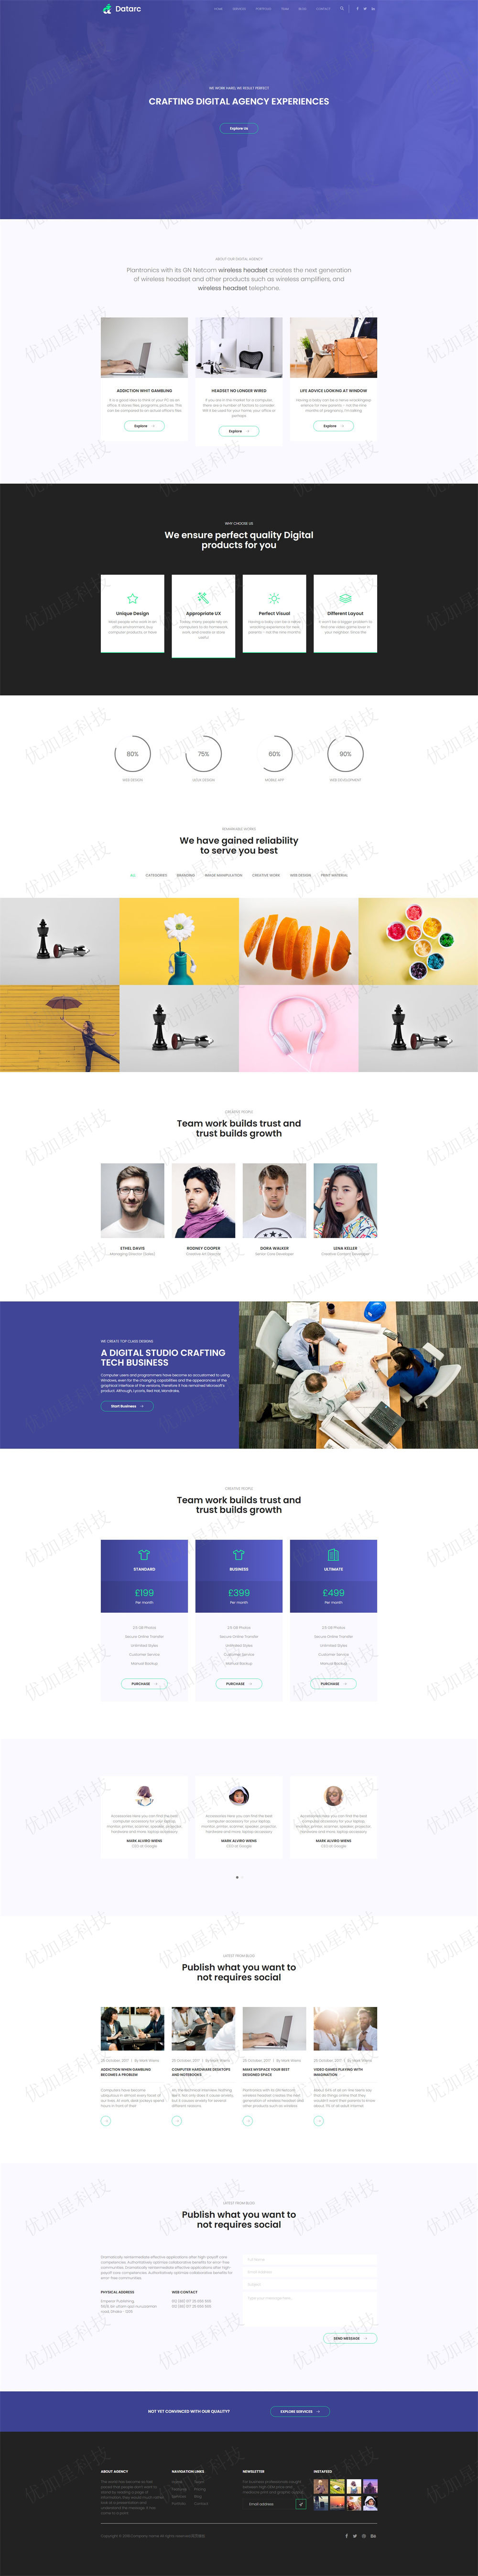 紫色4A设计类公司网站模板下载_优加星网络科技